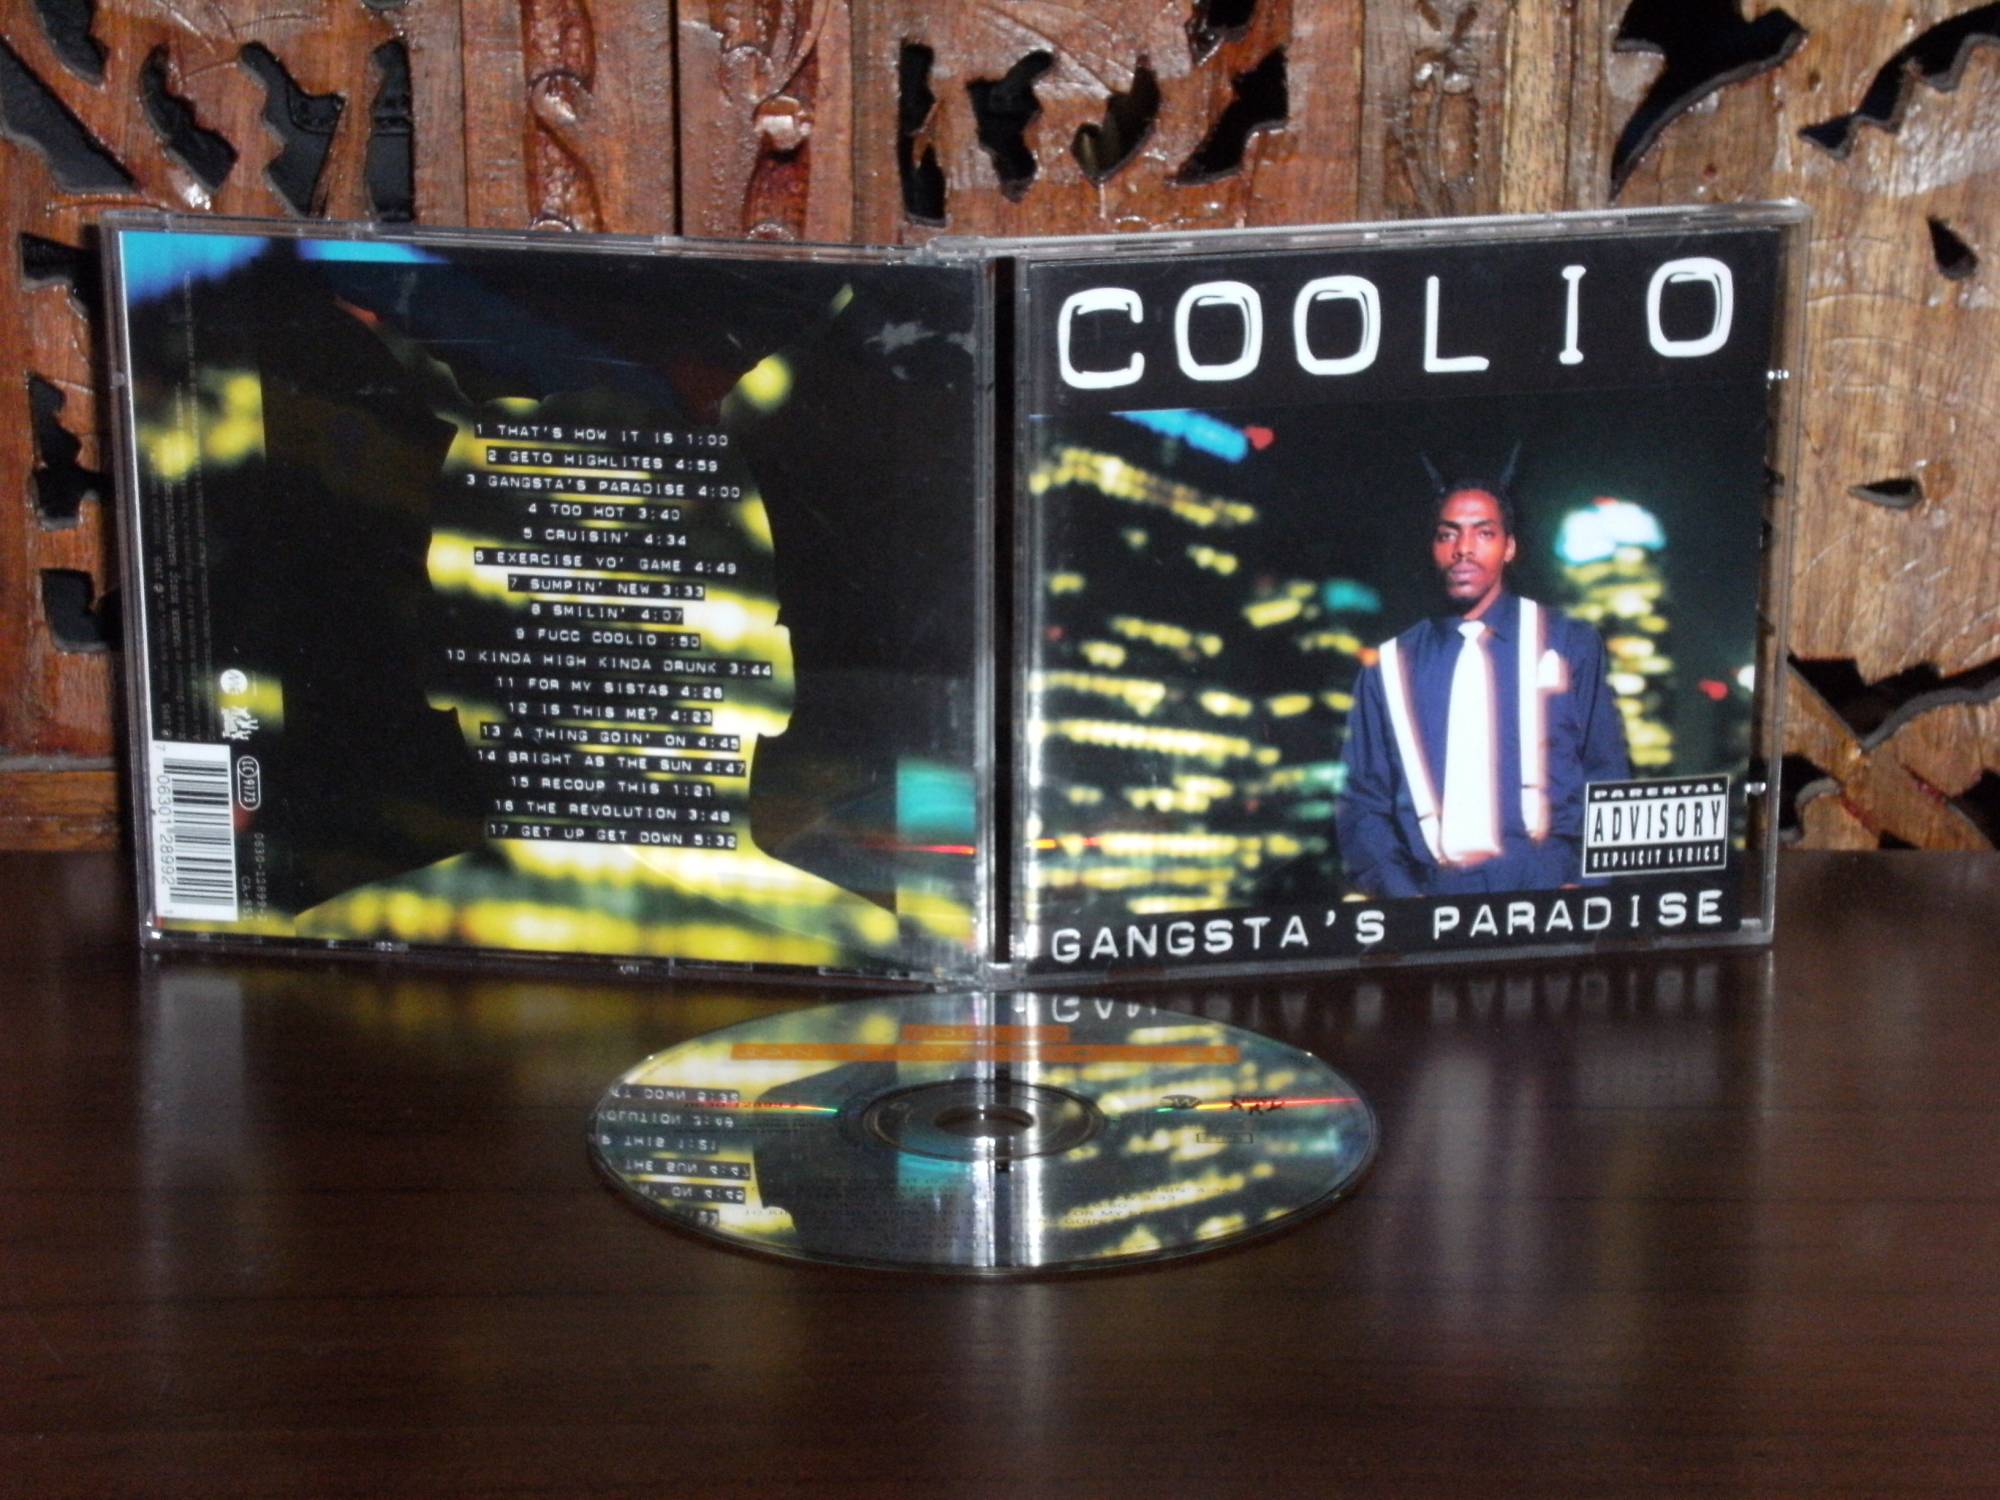 coolio gangsta paradise full album